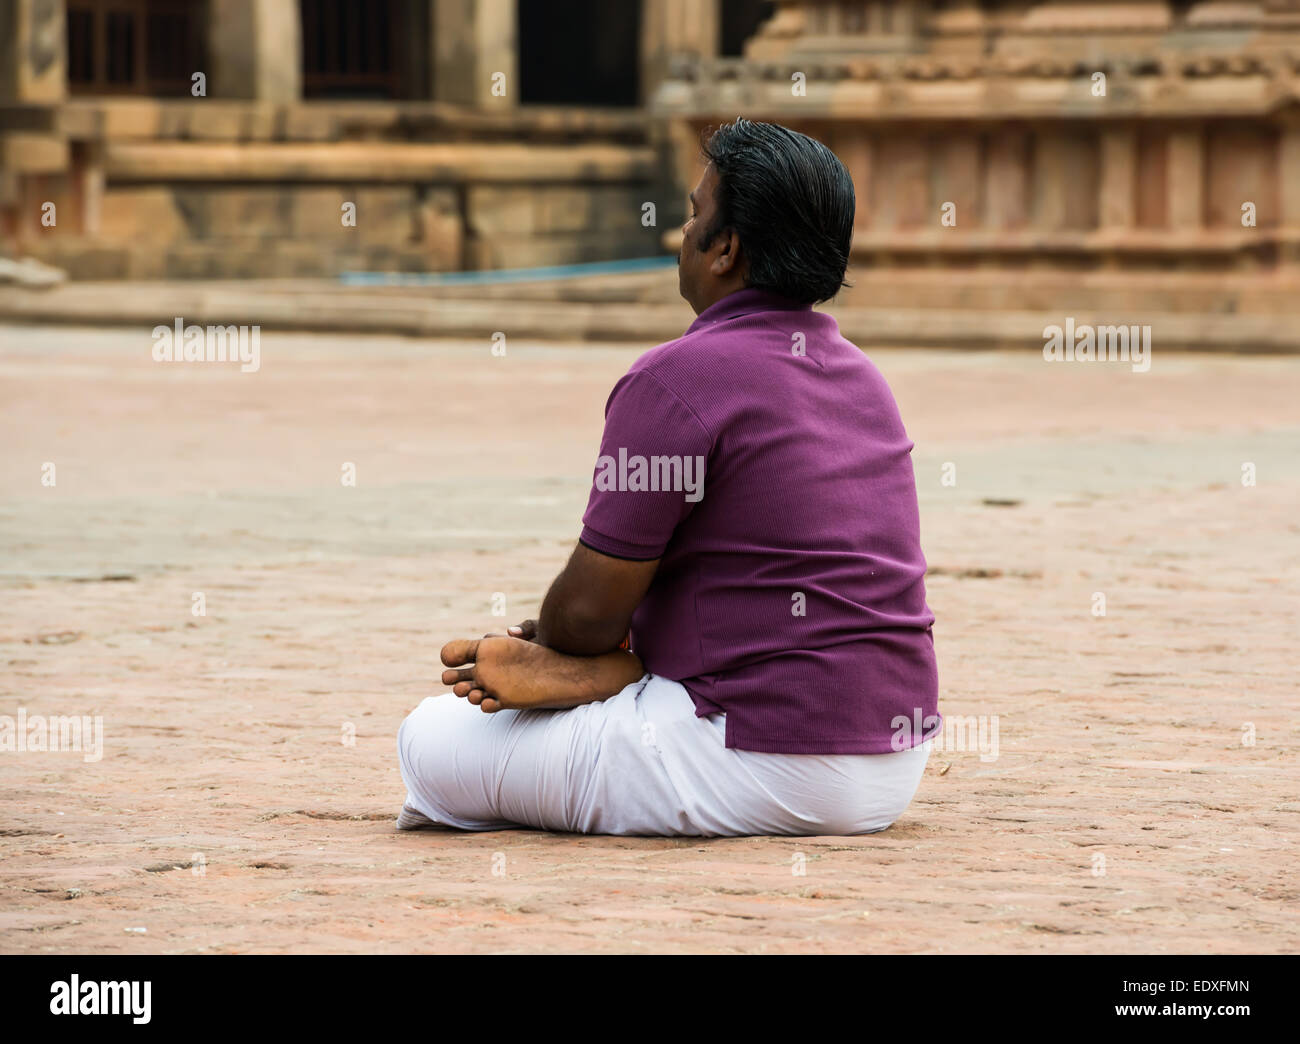 THANJAVOUR, India - 14 febbraio: Un indiano non identificato uomo si siede in Brihadeeswarar tempio indù. India, nello Stato del Tamil Nadu, Thanjavour. Foto Stock